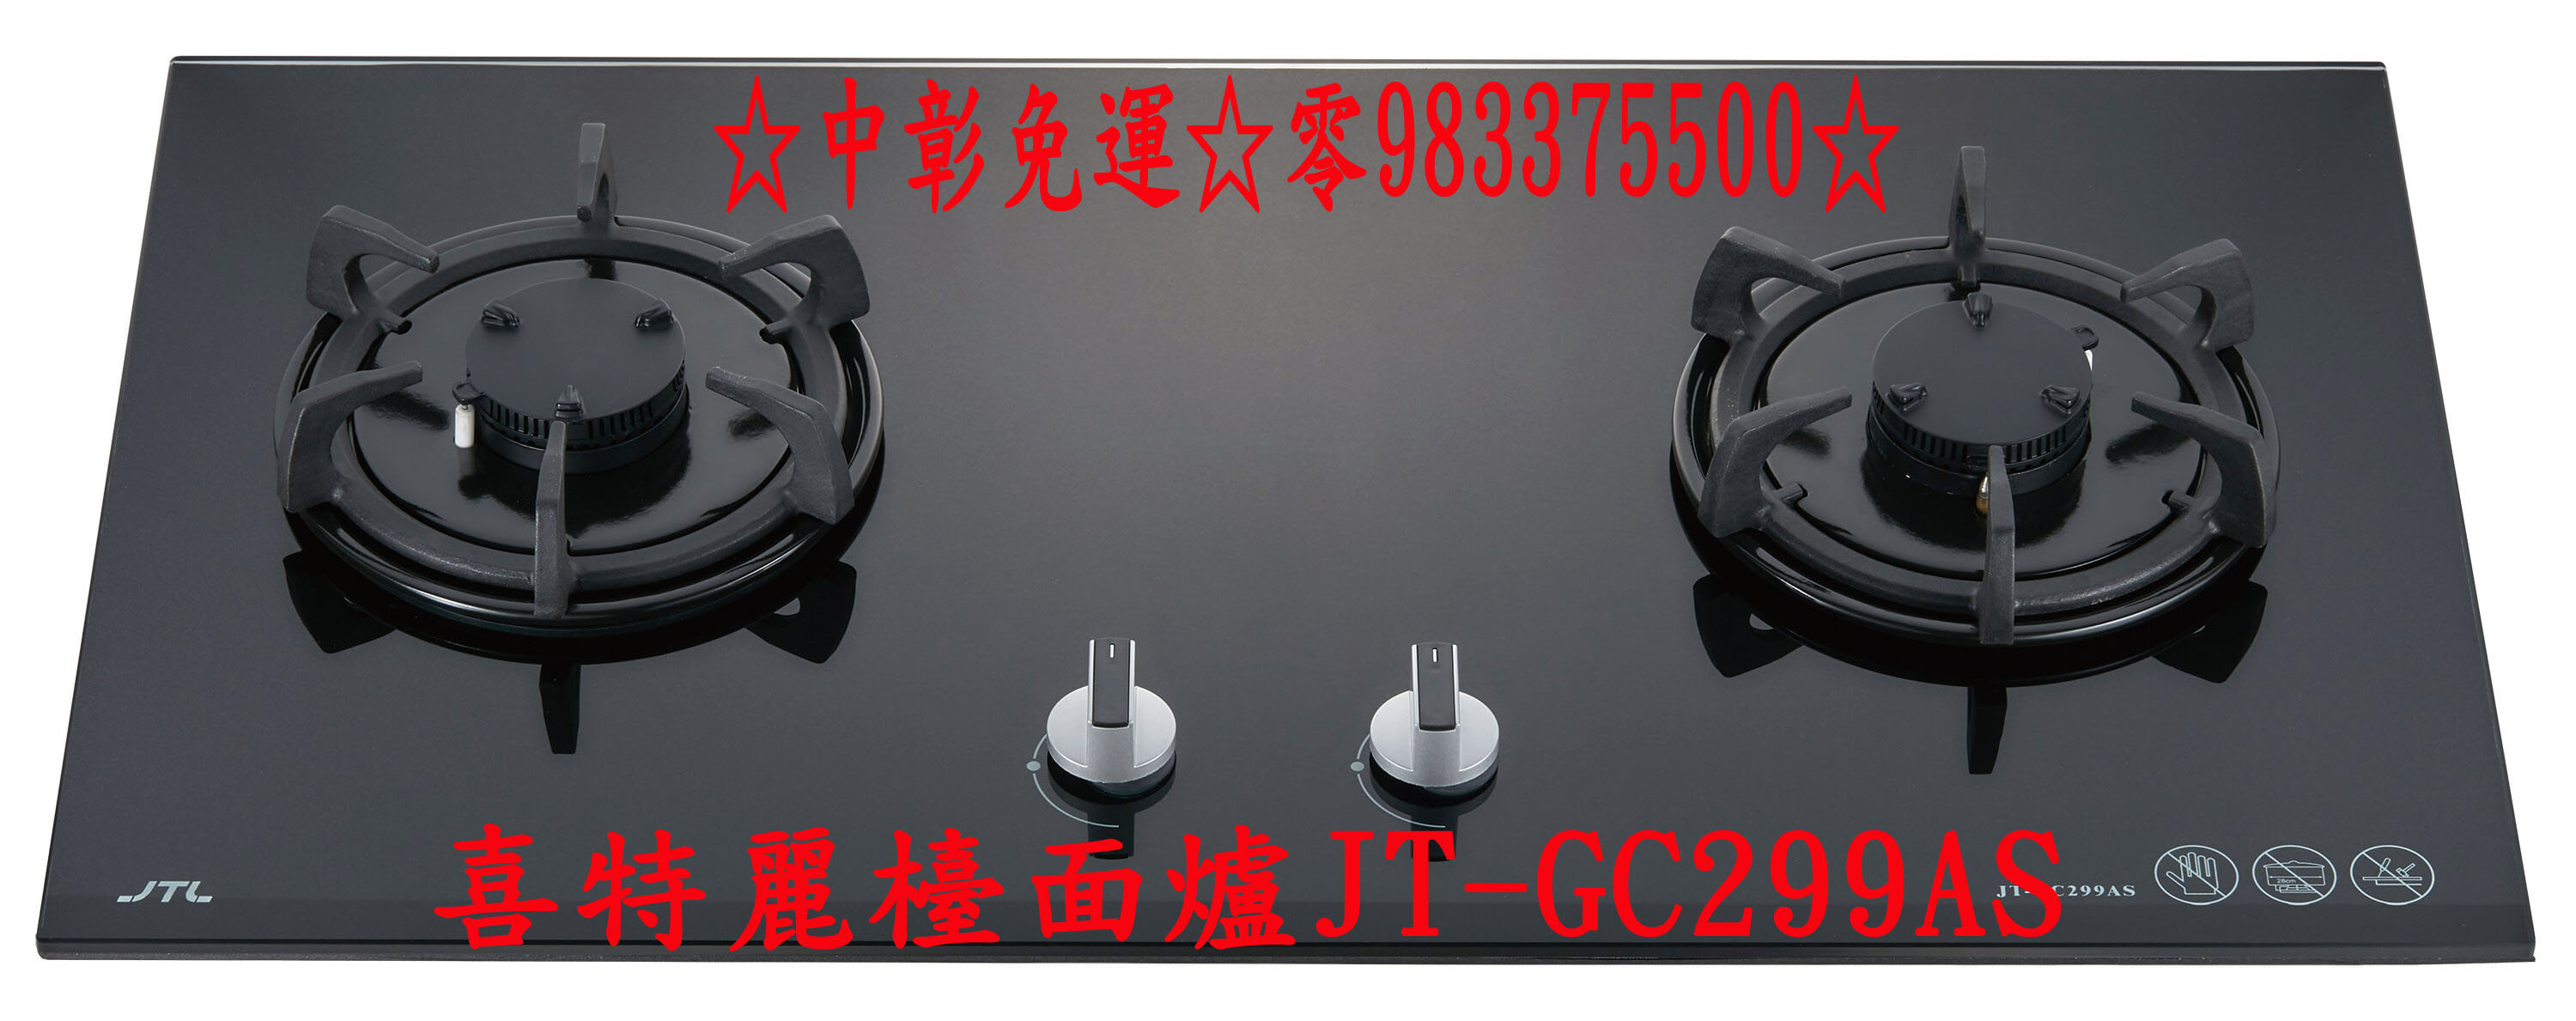 0983375500喜特麗檯面爐 晶焱黑色玻璃檯面爐JT-GC299AS、喜特麗瓦斯爐、台中喜特麗、彰化喜特麗 - 20200627122712-232086706.jpg(圖)